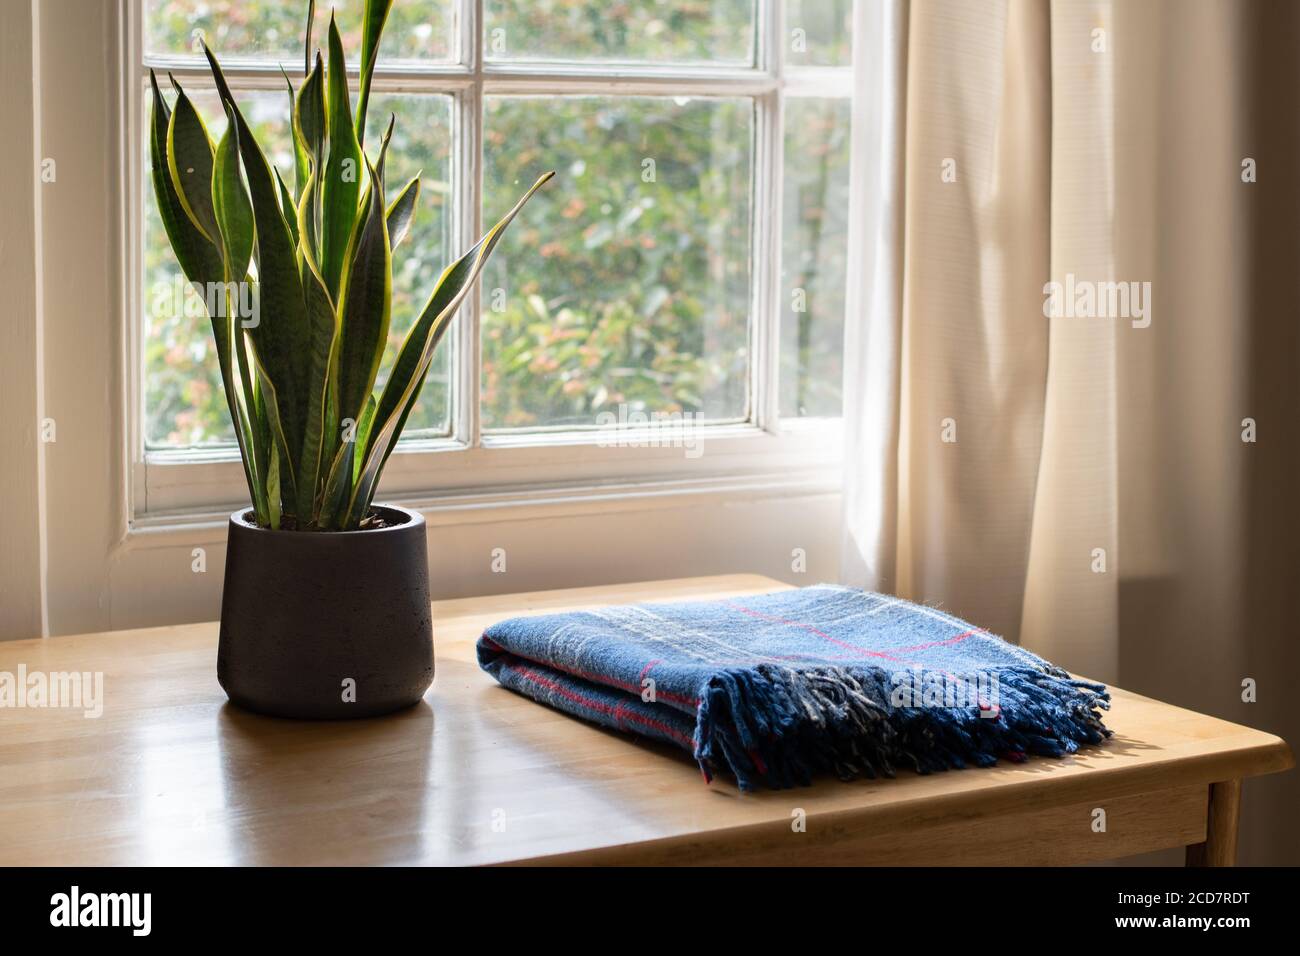 Schlangenpflanze und eine gemütliche Decke in einem wunderschön gestalteten Haus oder Wohnung Interieur. Stockfoto